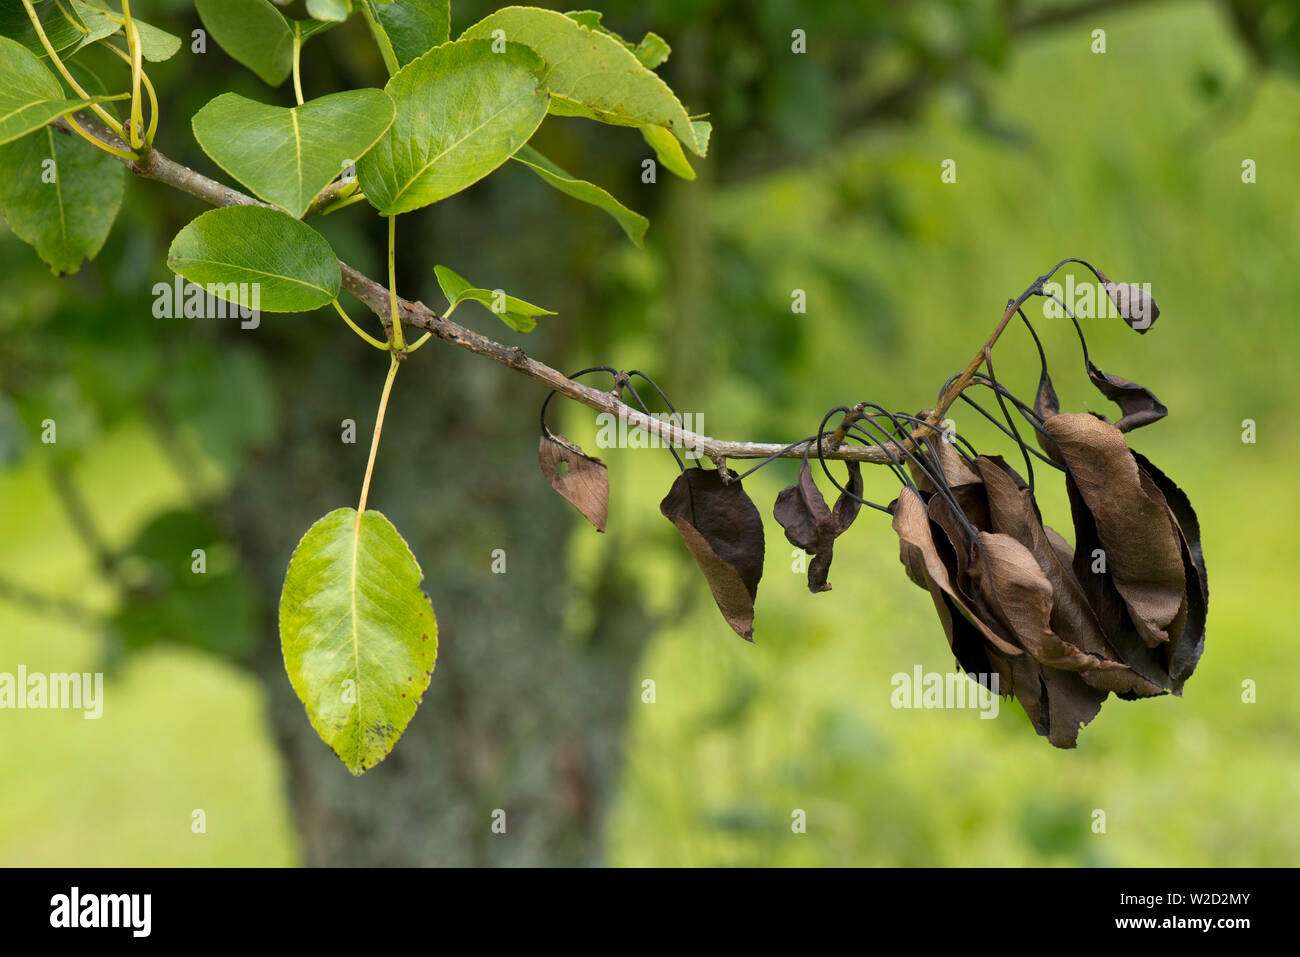 Nectria chancre poire, Neonectria ditissima, lésion et dead brown feuilles sur une branche de poire, Berkshire, juin Banque D'Images